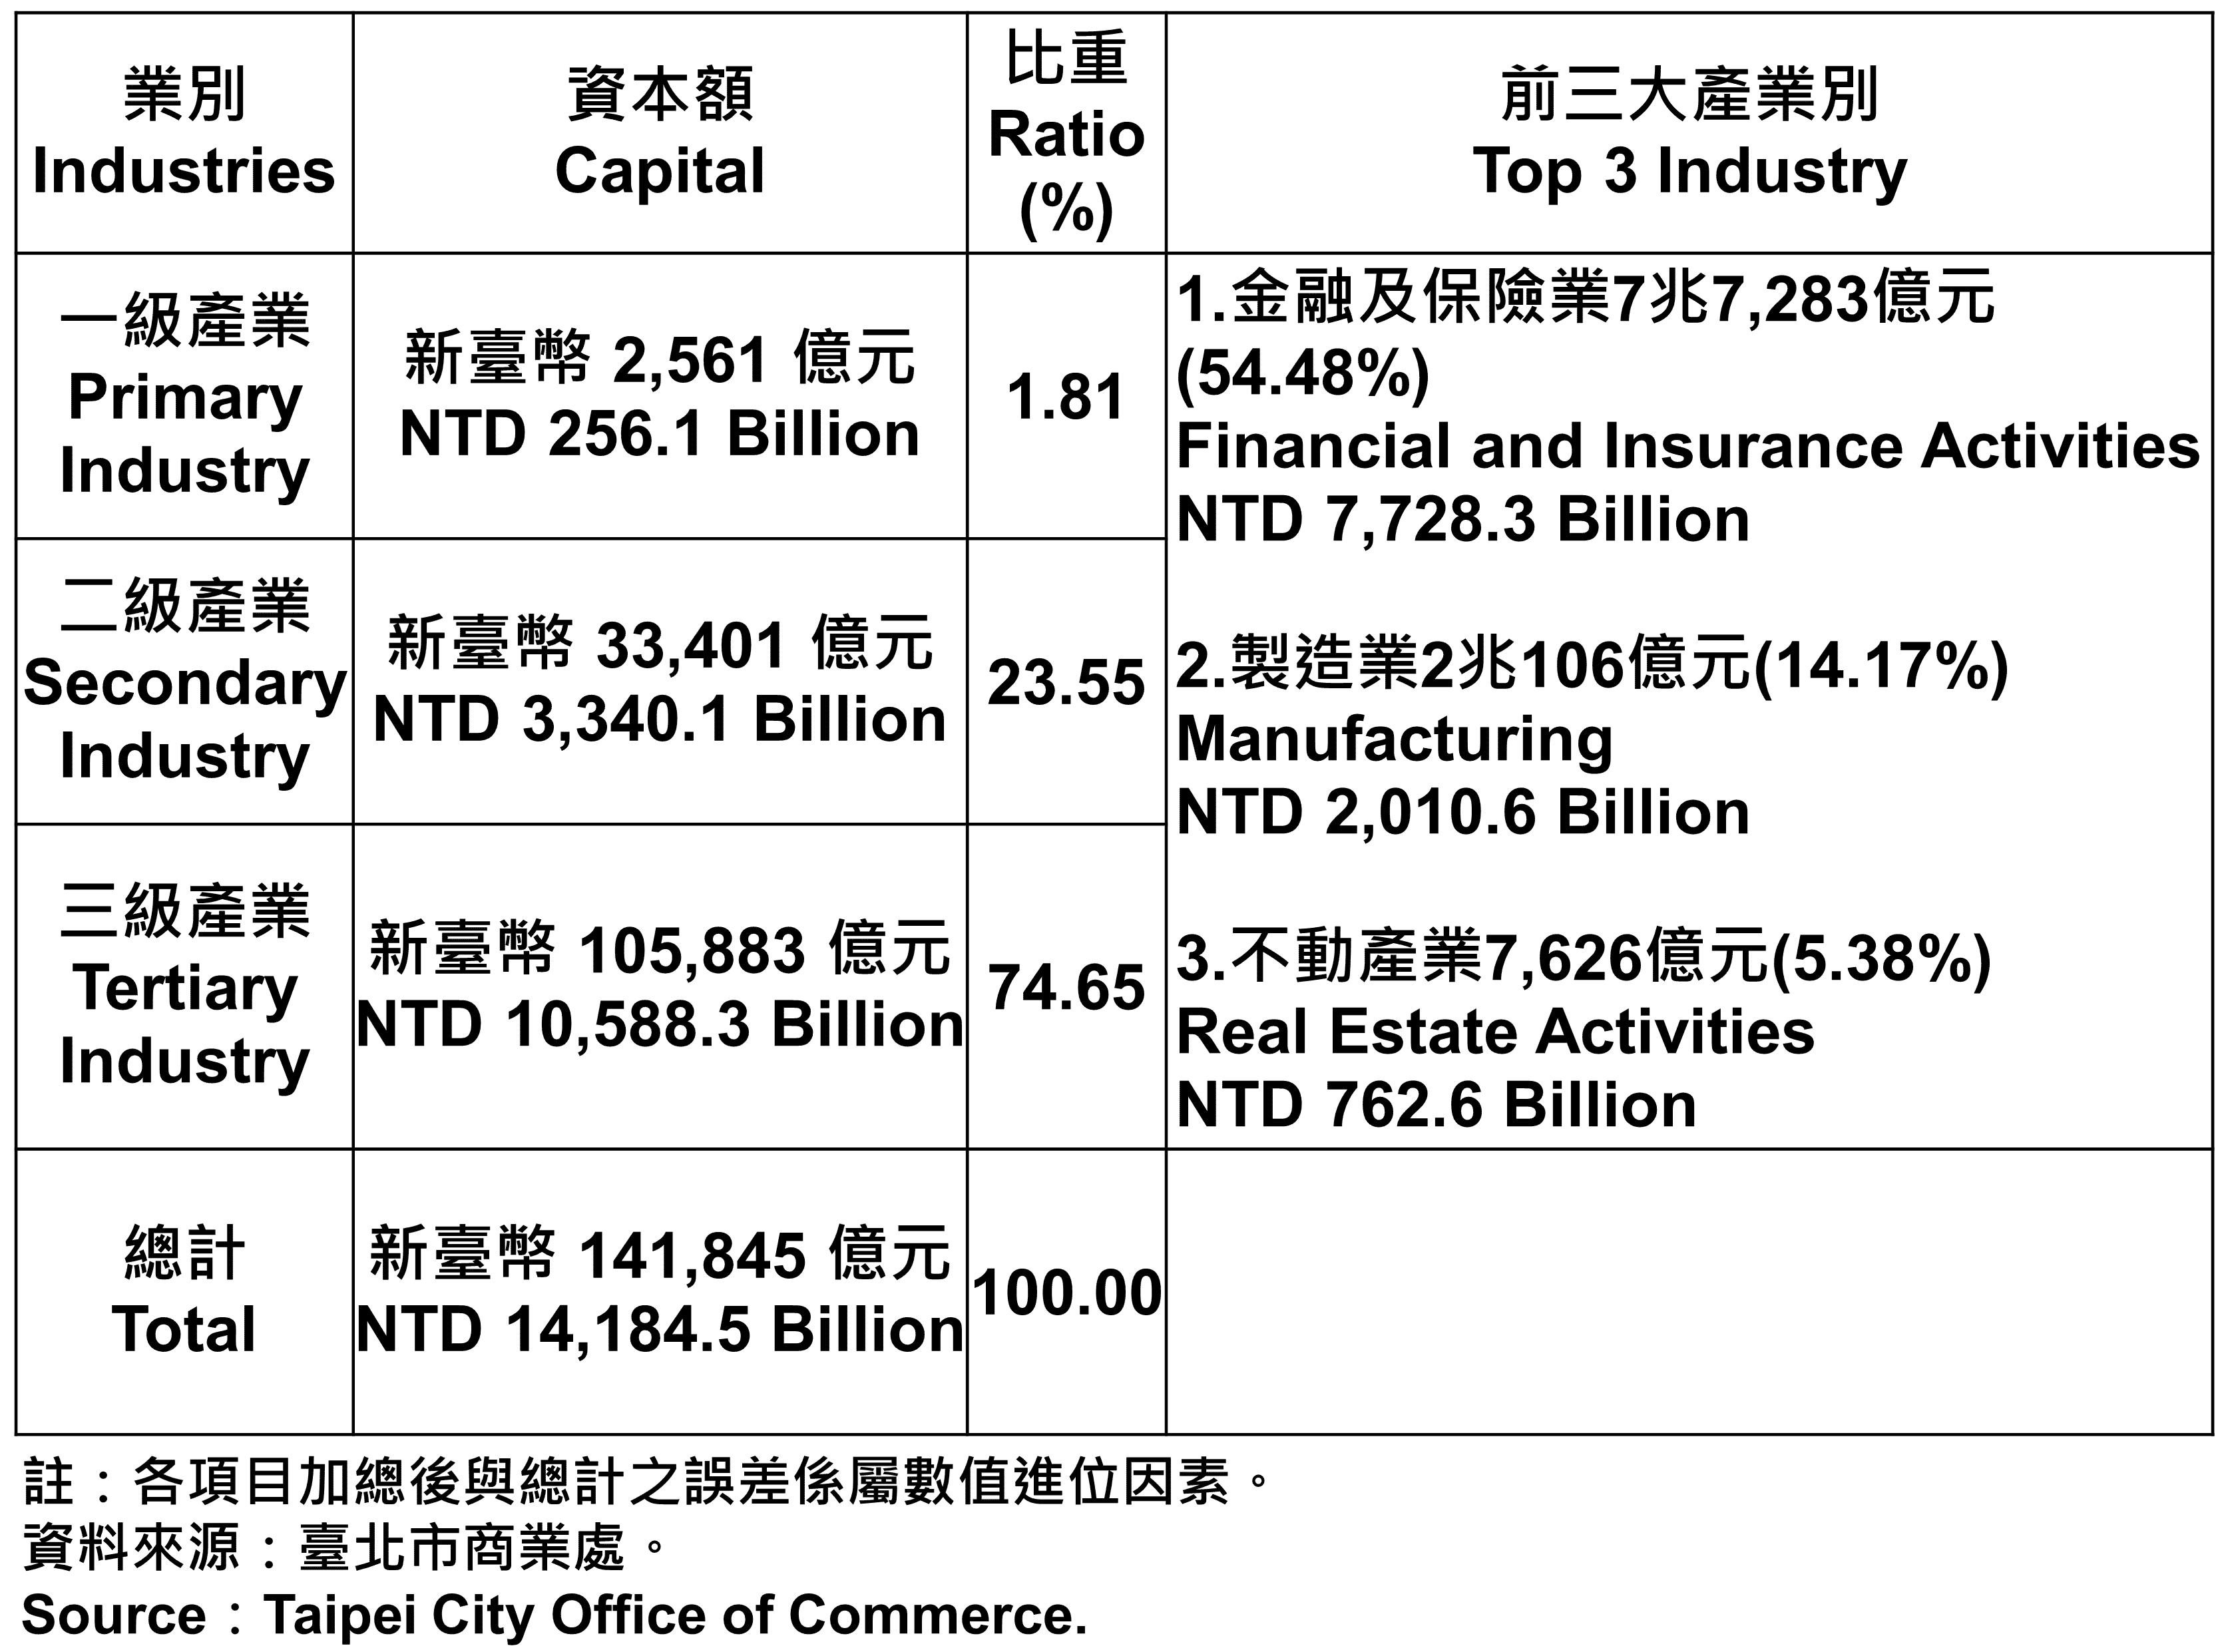 臺北市登記之公司資本總額—2023Q1 Total Capital of the Companies and Firms Registered in Taipei City—2023Q1